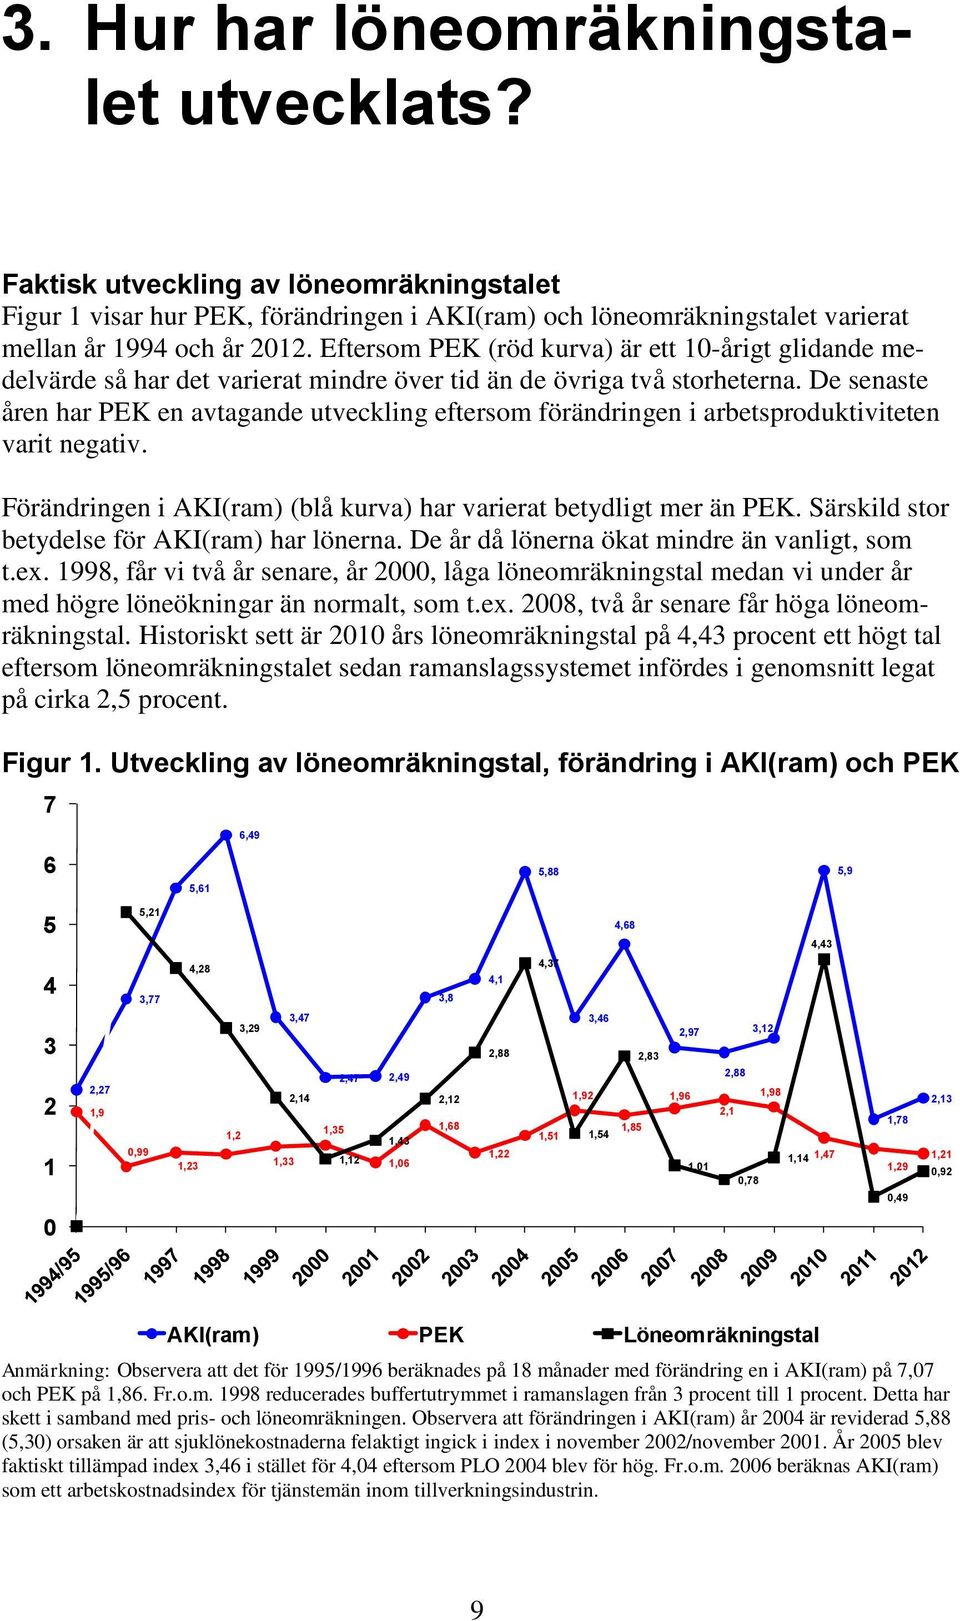 De senaste åren har PEK en avtagande utveckling eftersom förändringen i arbetsproduktiviteten varit negativ. Förändringen i AKI(ram) (blå kurva) har varierat betydligt mer än PEK.